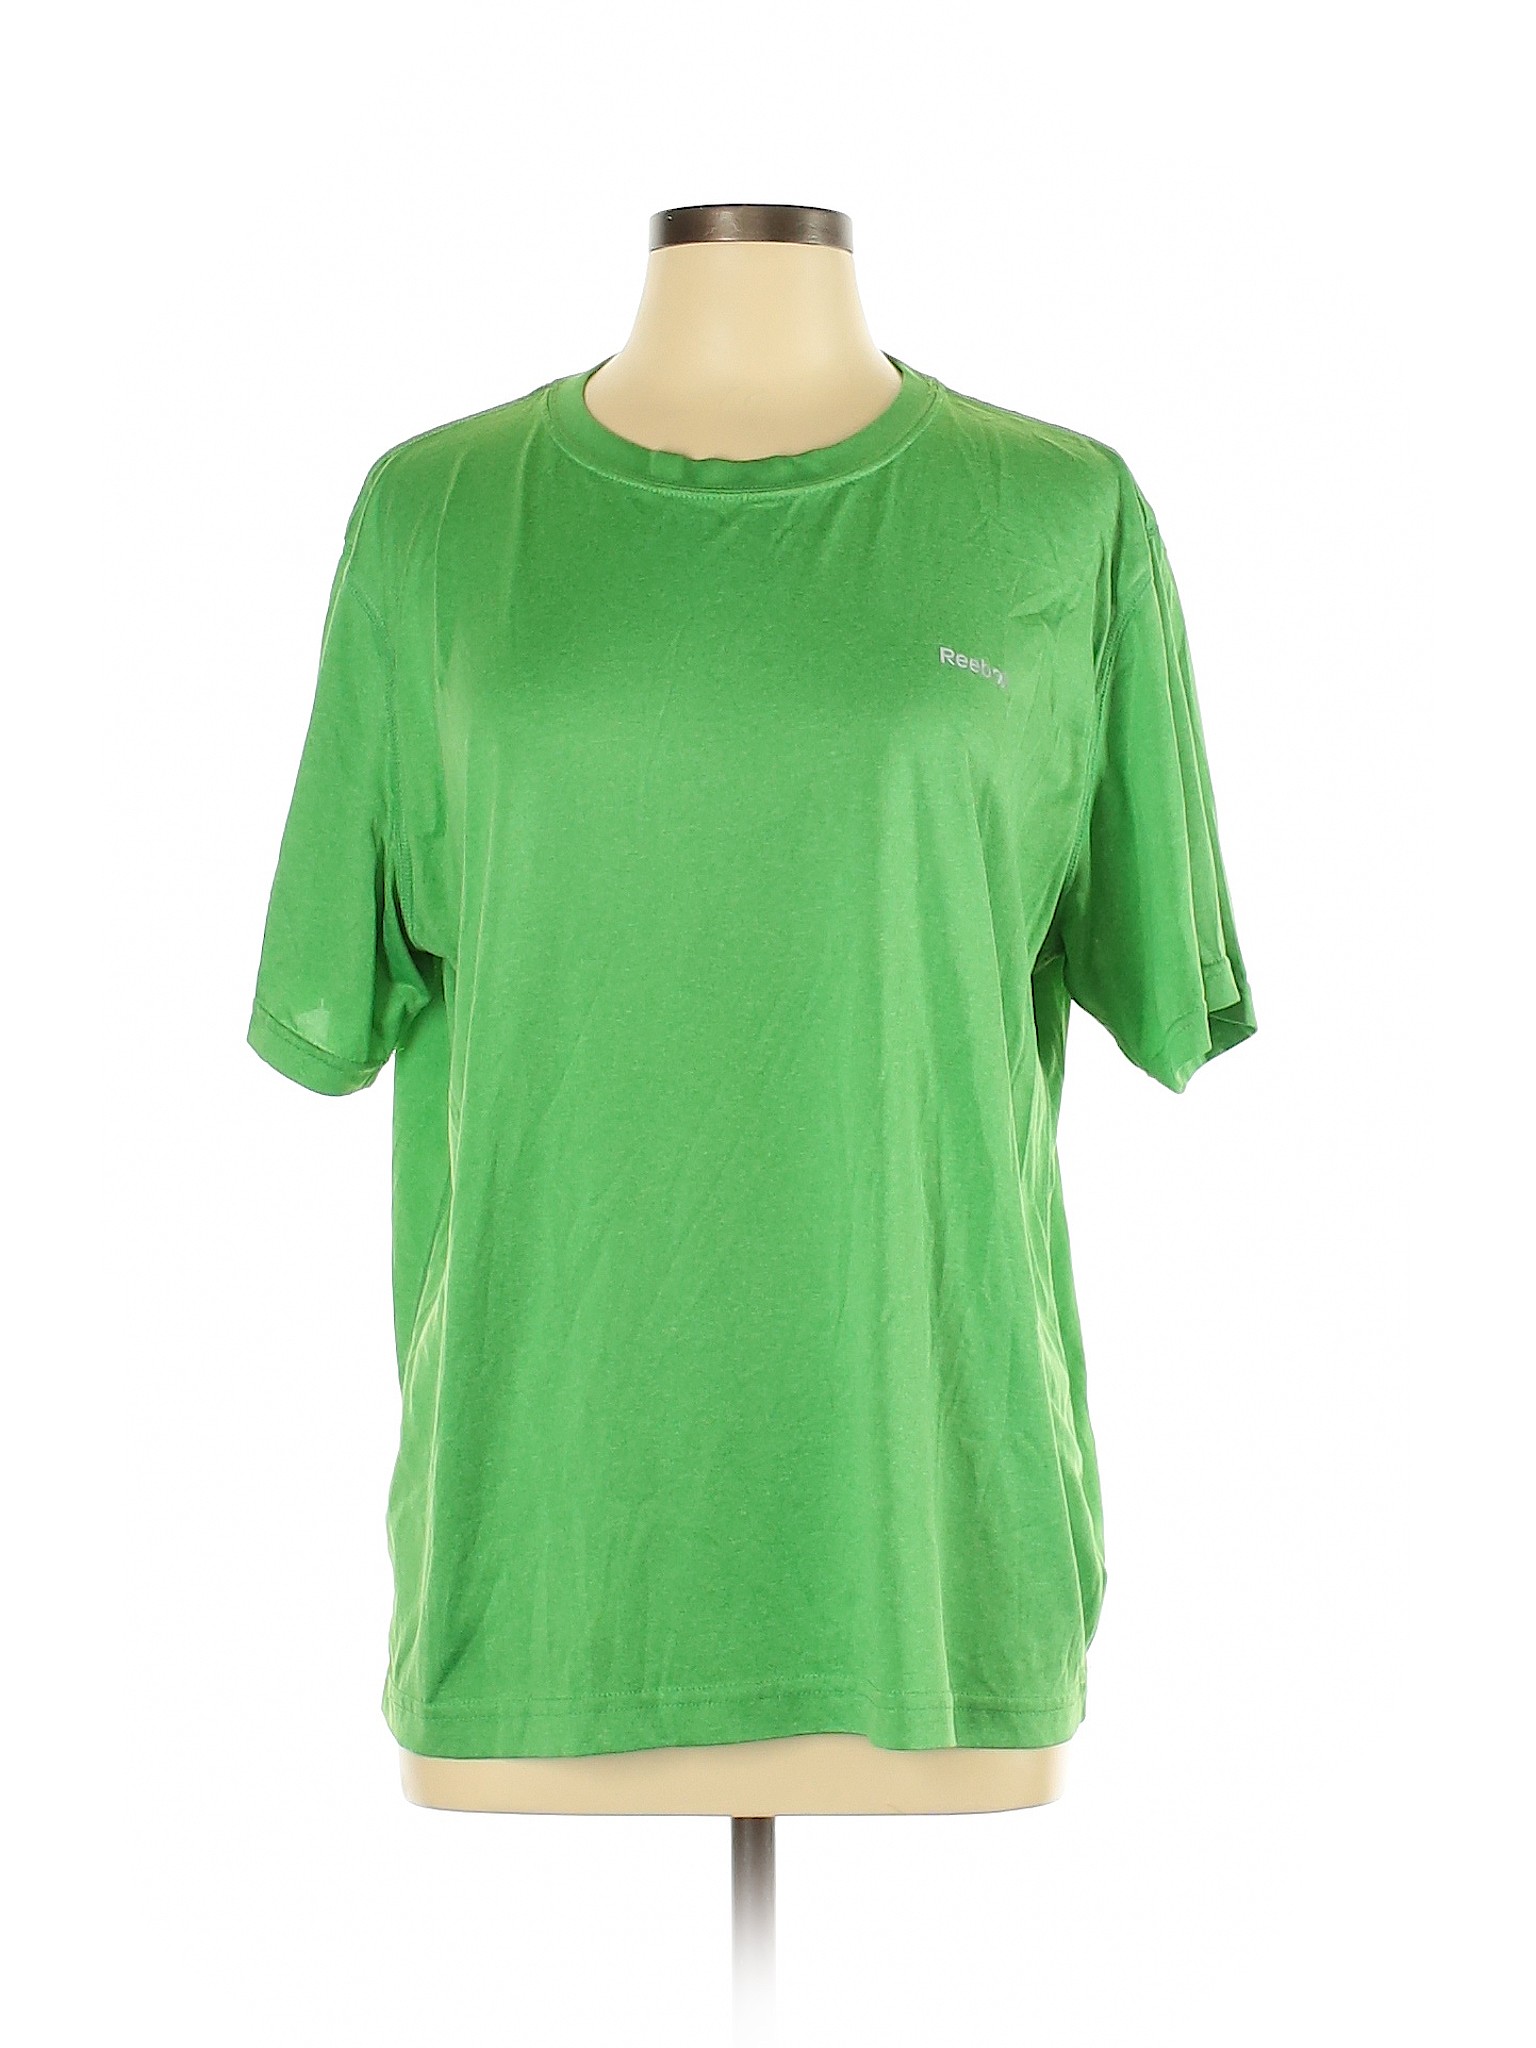 reebok t shirt womens green